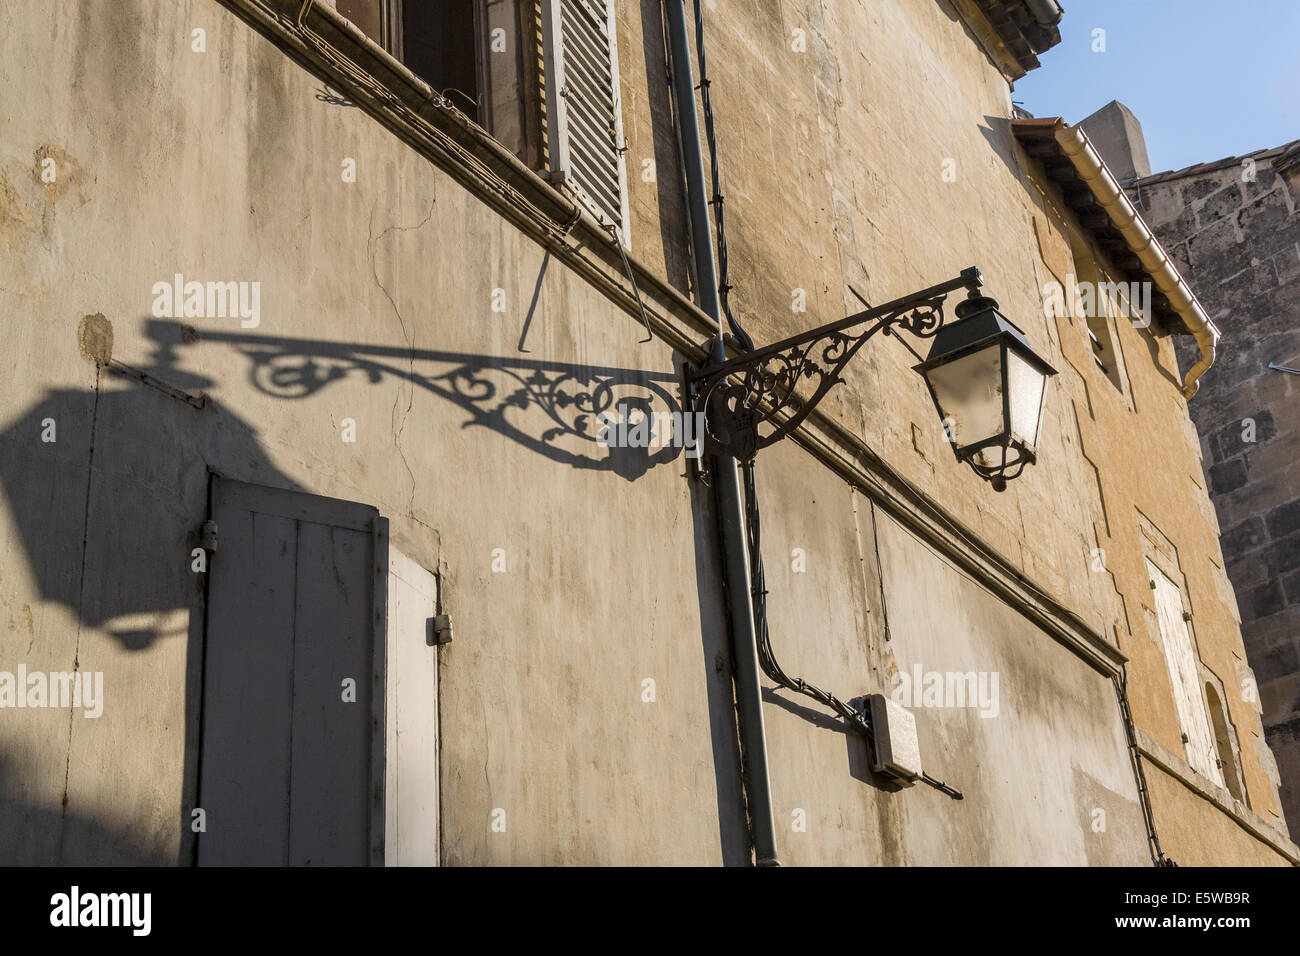 Lampe en fer forgé et son ombre sur un mur à la place de la République, Arles, France. JMH6264 Banque D'Images